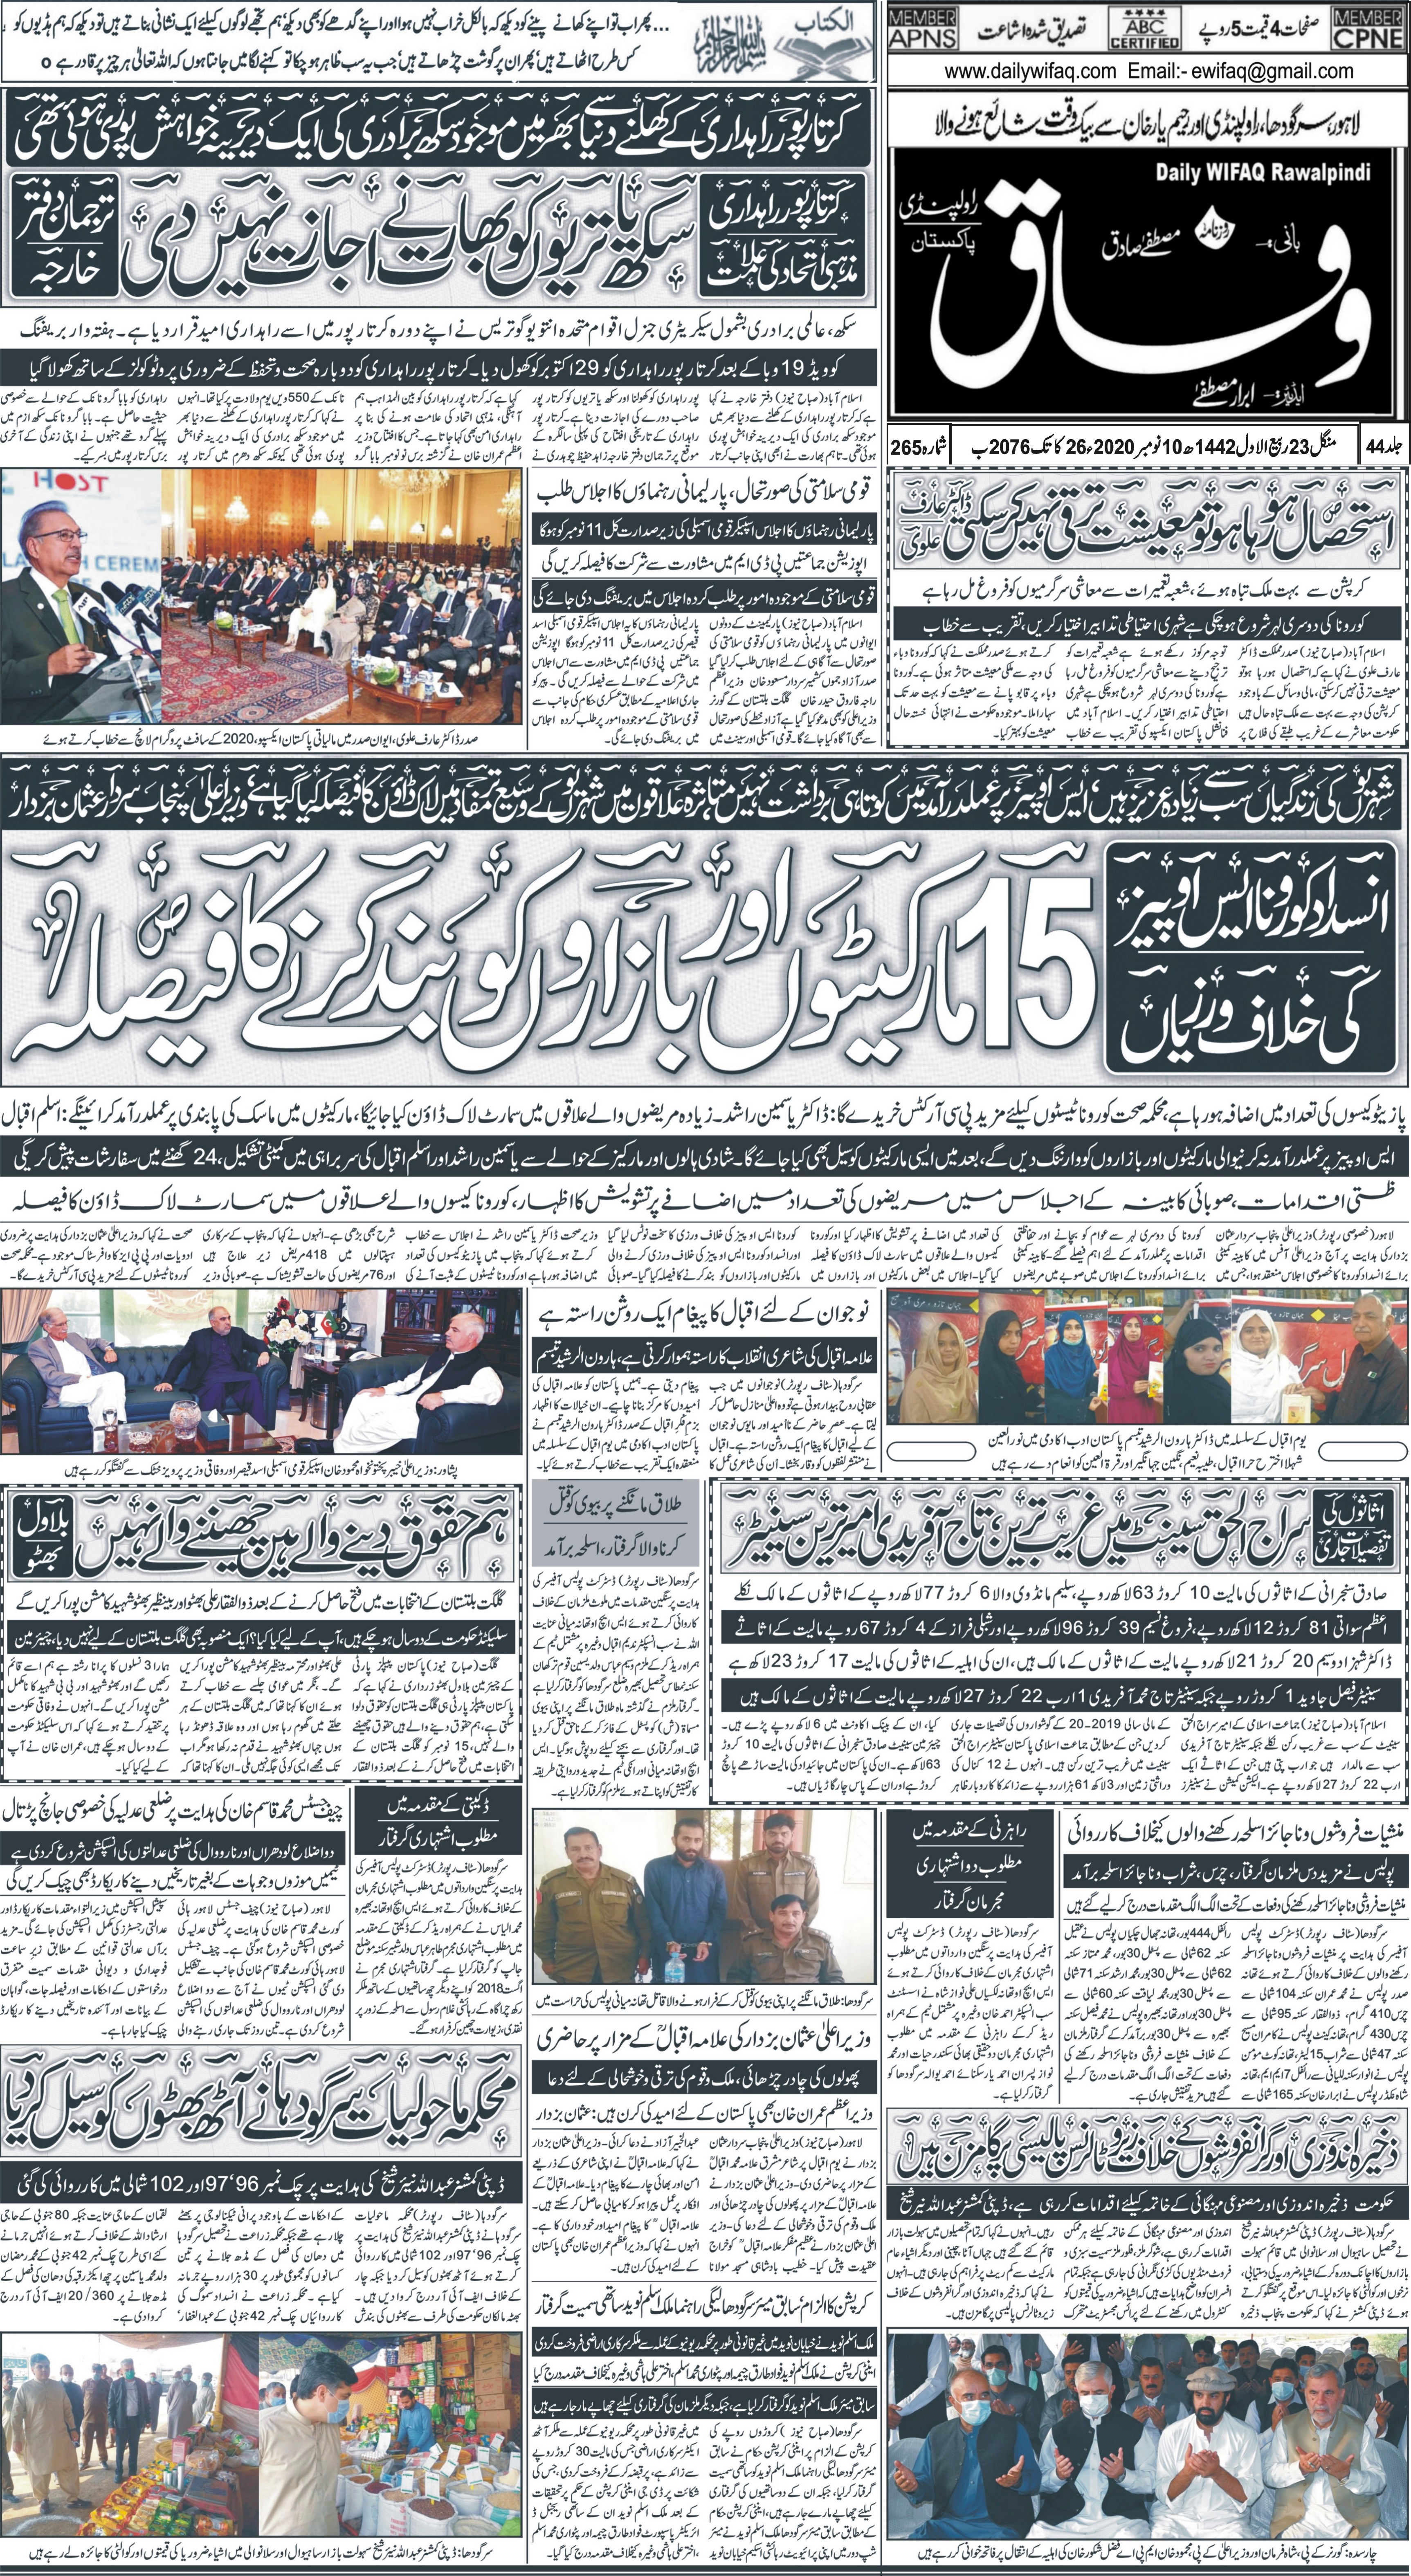 e-Paper – Daily Wifaq – Rawalpindi – 10-11-2020